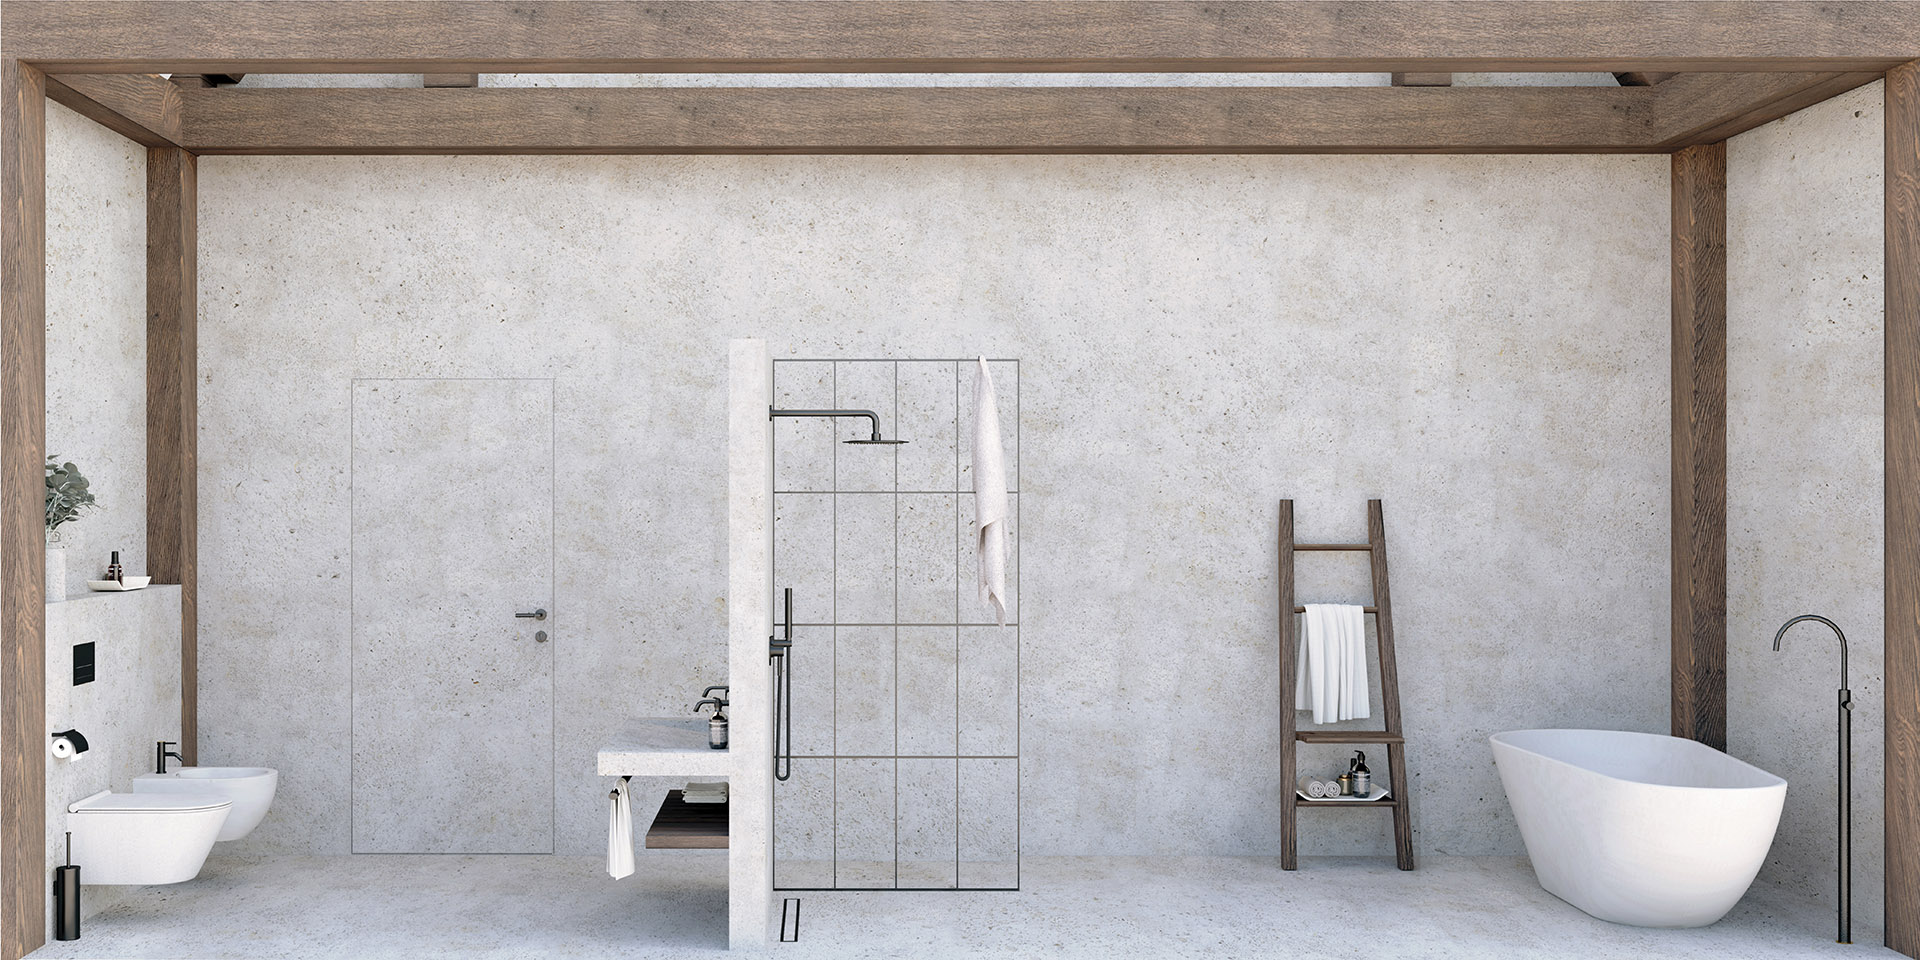  Wizualizacka wnętrza mieszkalnego - Jasne wnętrze,połączenie bieli i stolarki - widok łazienki.